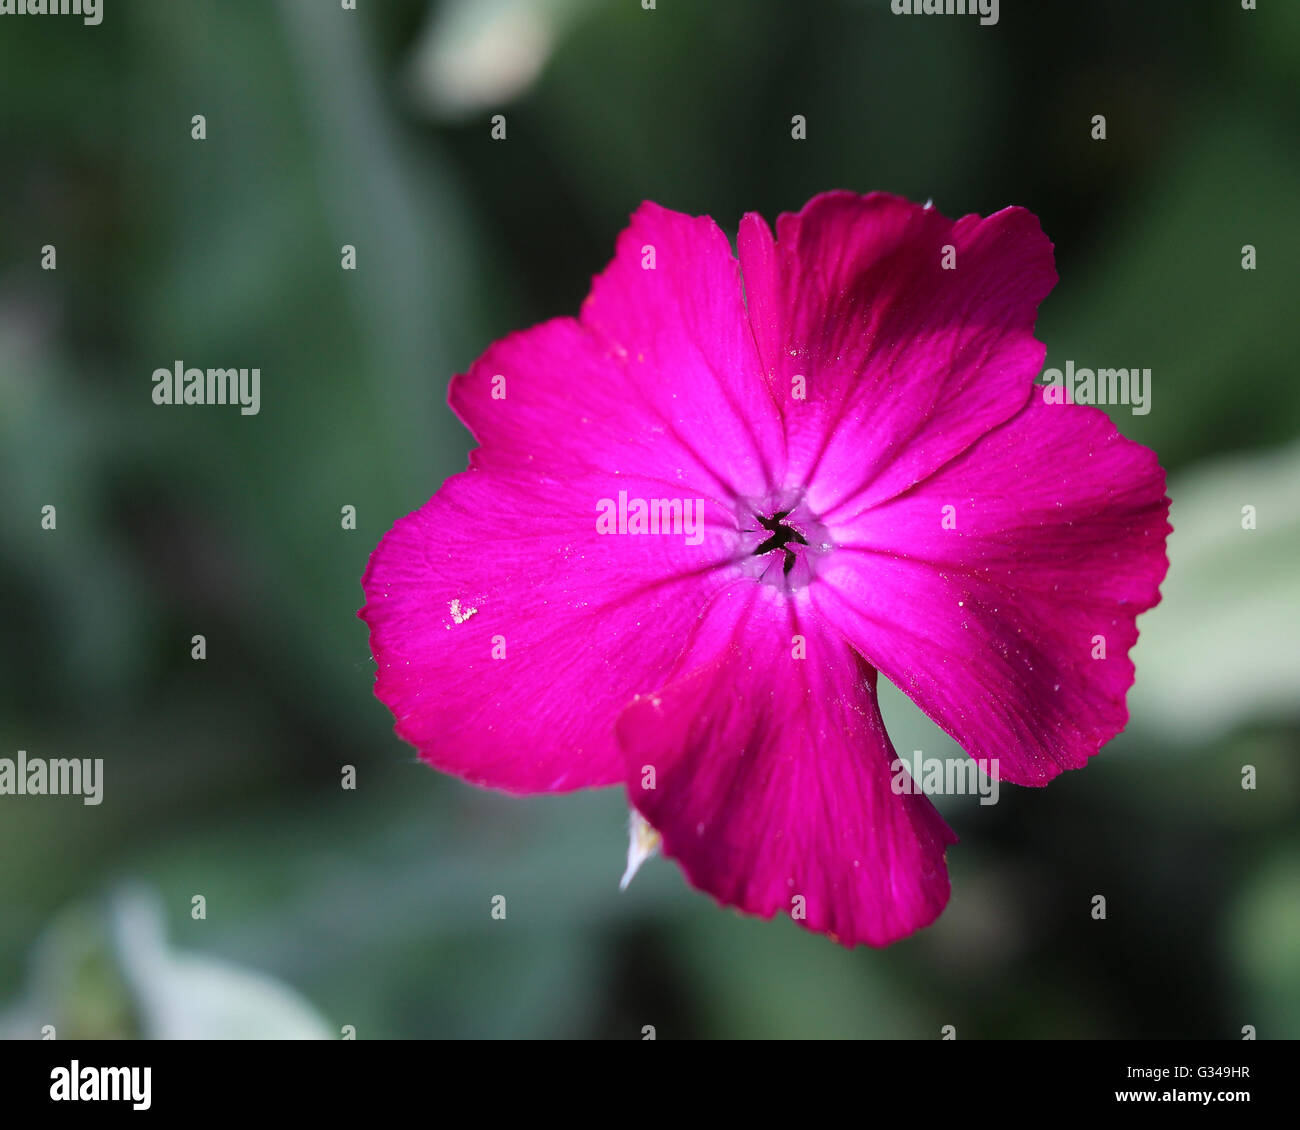 La fleur rose cerise vif de Silene coronaria également connu sous le nom de Rose campion ou Dusty Miller. Banque D'Images